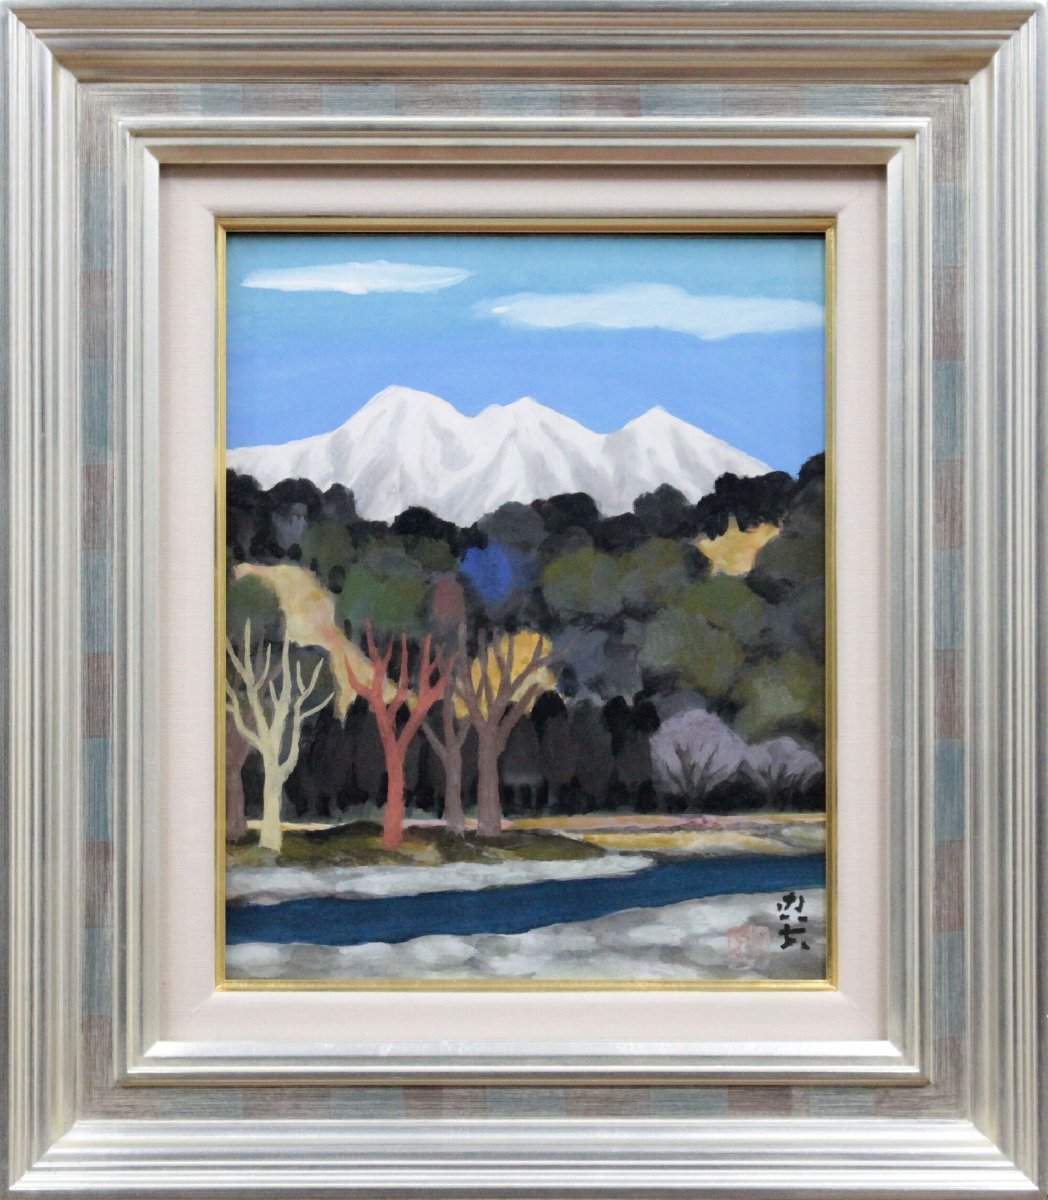 Tadao Yoneshige Unbetiteltes japanisches Gemälde [Authentizität garantiert] Gemälde - Hokkaido Gallery, Malerei, Japanische Malerei, Landschaft, Wind und Mond